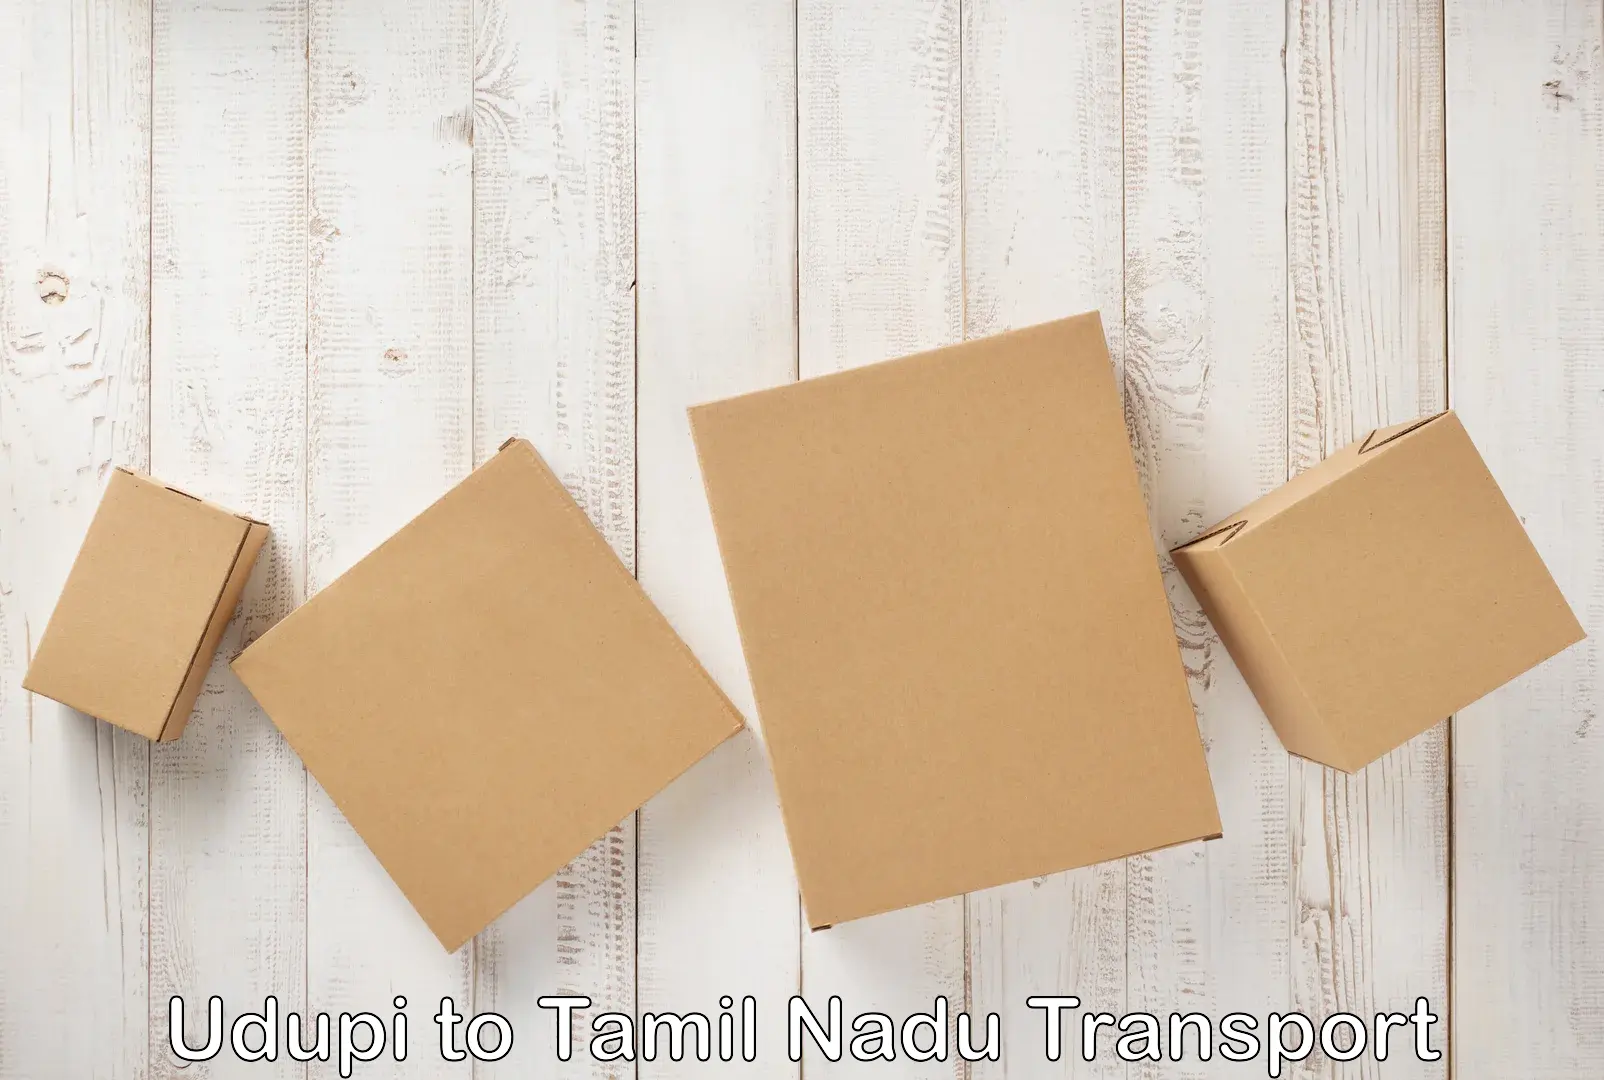 Online transport in Udupi to Tamil Nadu